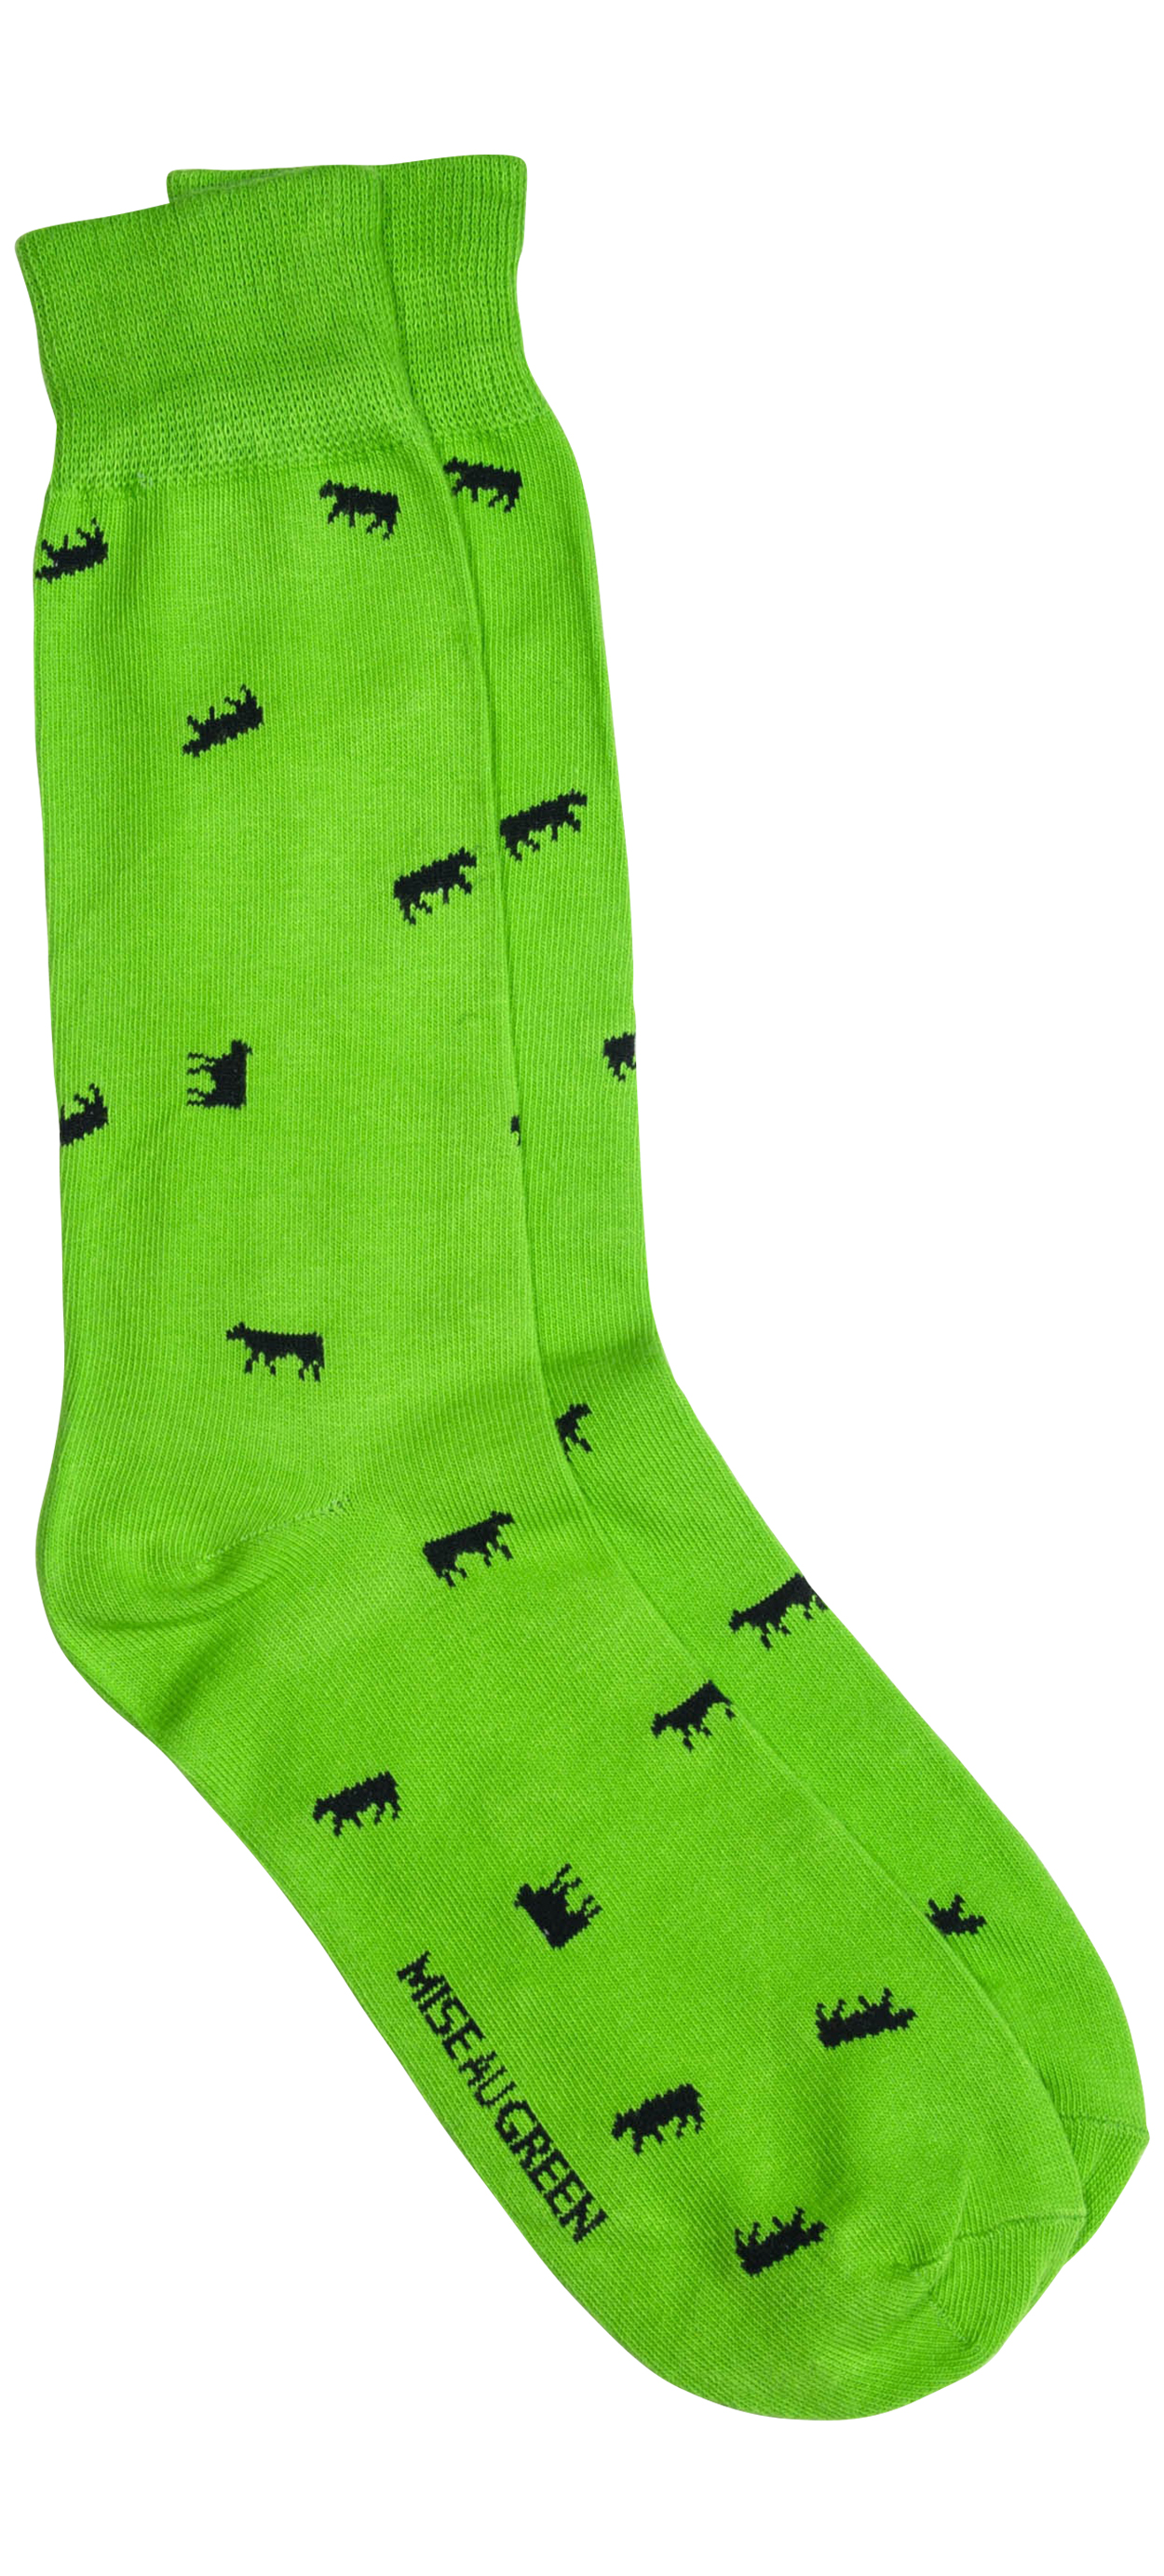 chaussettes hautes mise au green en coton mélangé vert